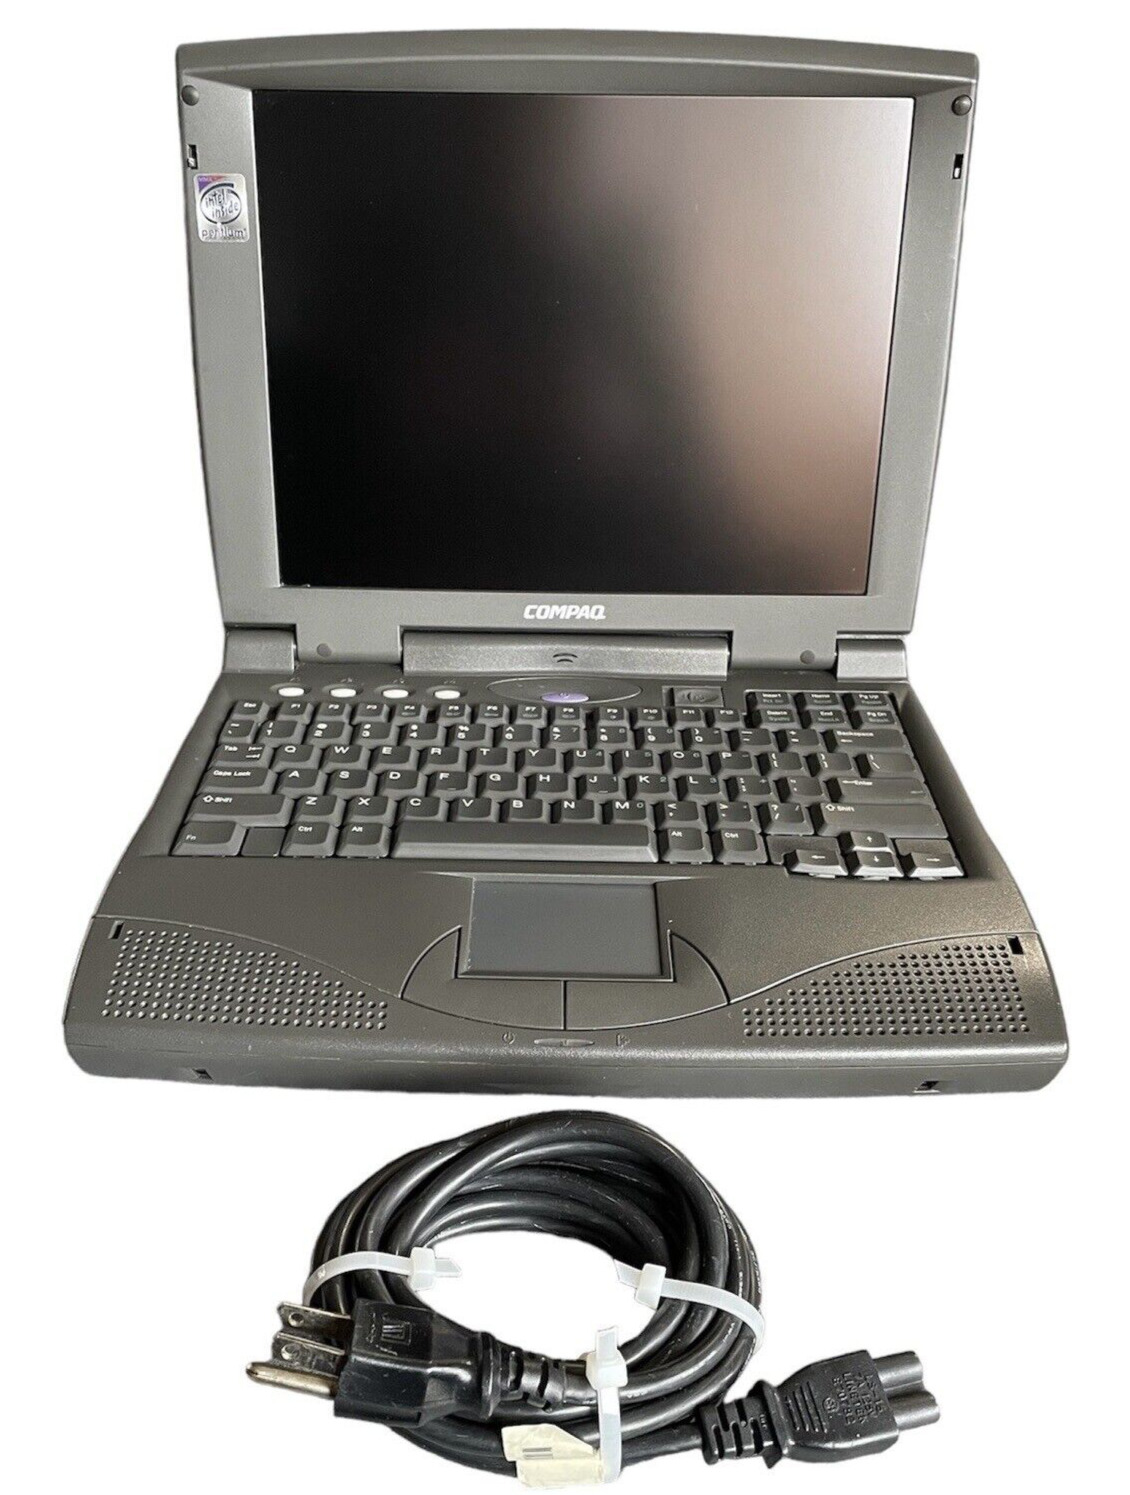 Authentic COMPAQ Armada 1535 DM Laptop Series 201 Notebook For Parts or Repair